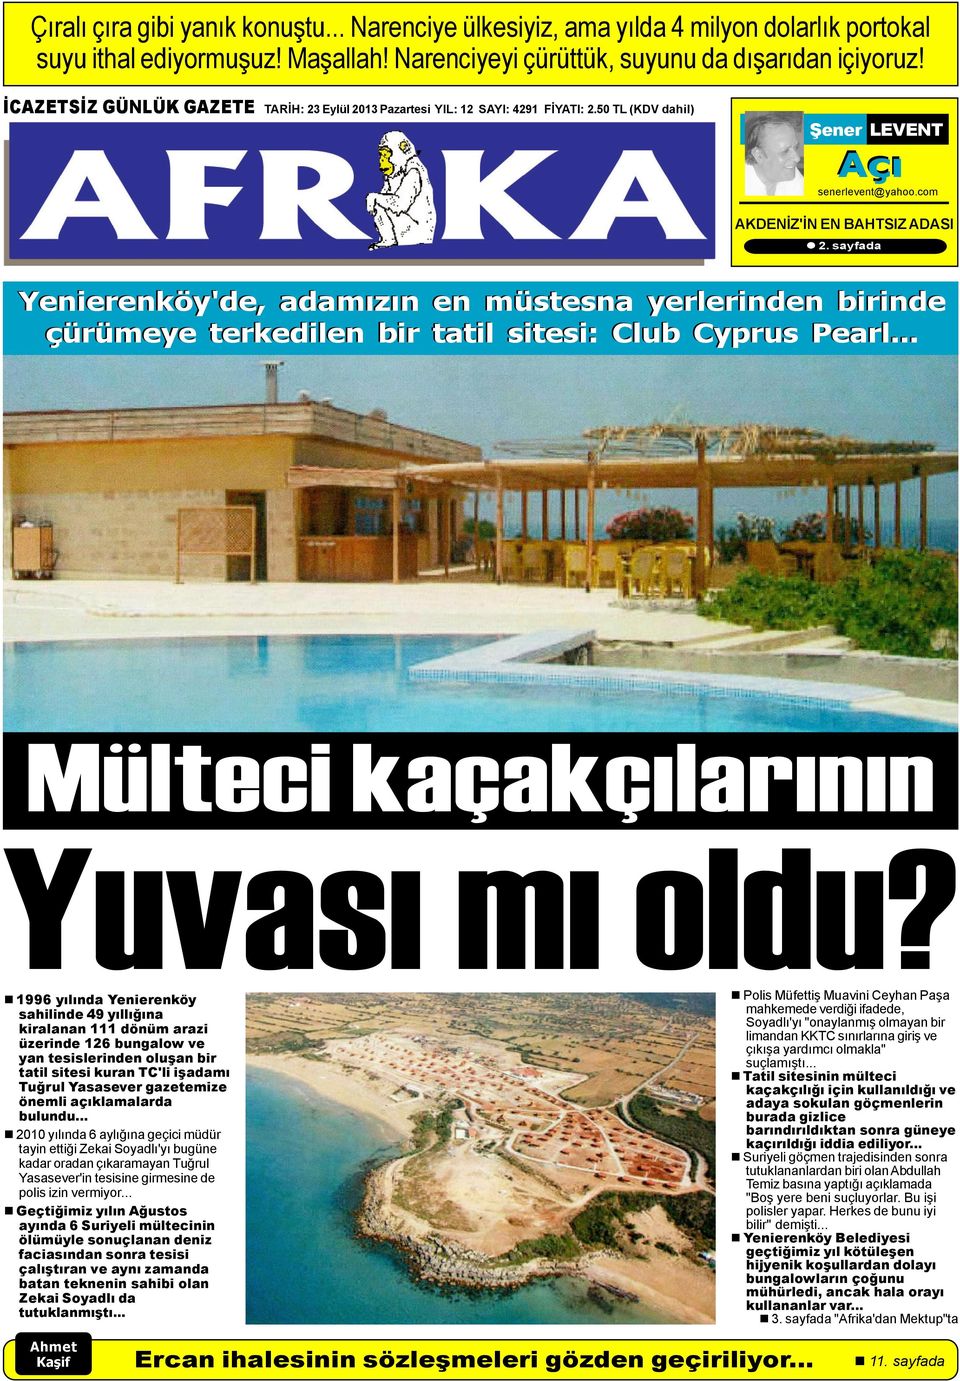 sayfada Yenierenköy'de, adamýzýn en müstesna yerlerinden birinde çürümeye terkedilen bir tatil sitesi: Club Cyprus Pearl... Mülteci kaçakçýlarýnýn Yuvasý mý oldu?